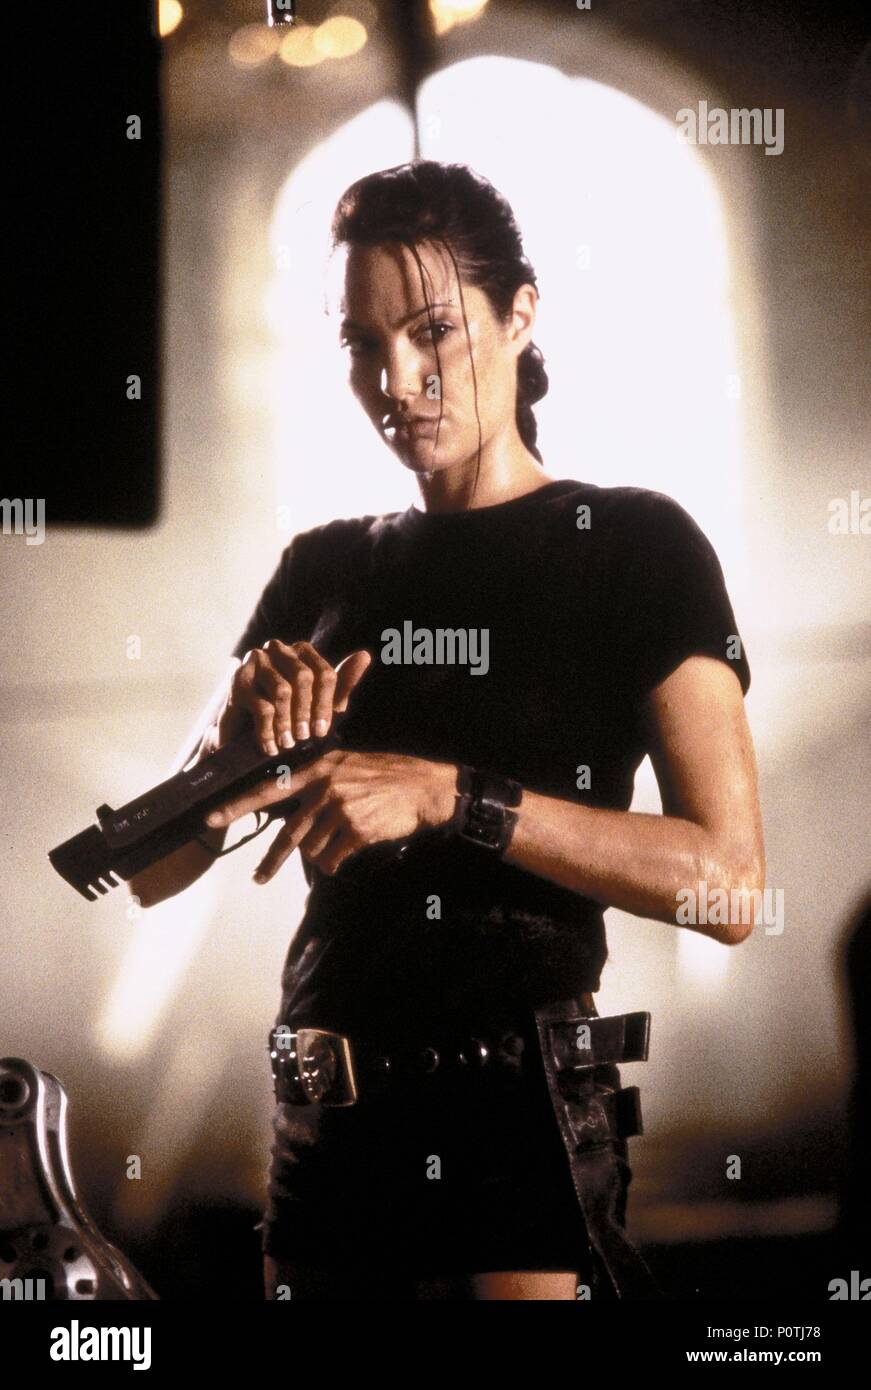 Original Film Titel: Lara Croft: Tomb Raider. Englischer Titel: Lara Croft: Tomb Raider. Regisseur: Simon West. Jahr: 2001. Stars: Angelina Jolie. Quelle: Paramount Pictures/Bailey, ALEX/Album Stockfoto